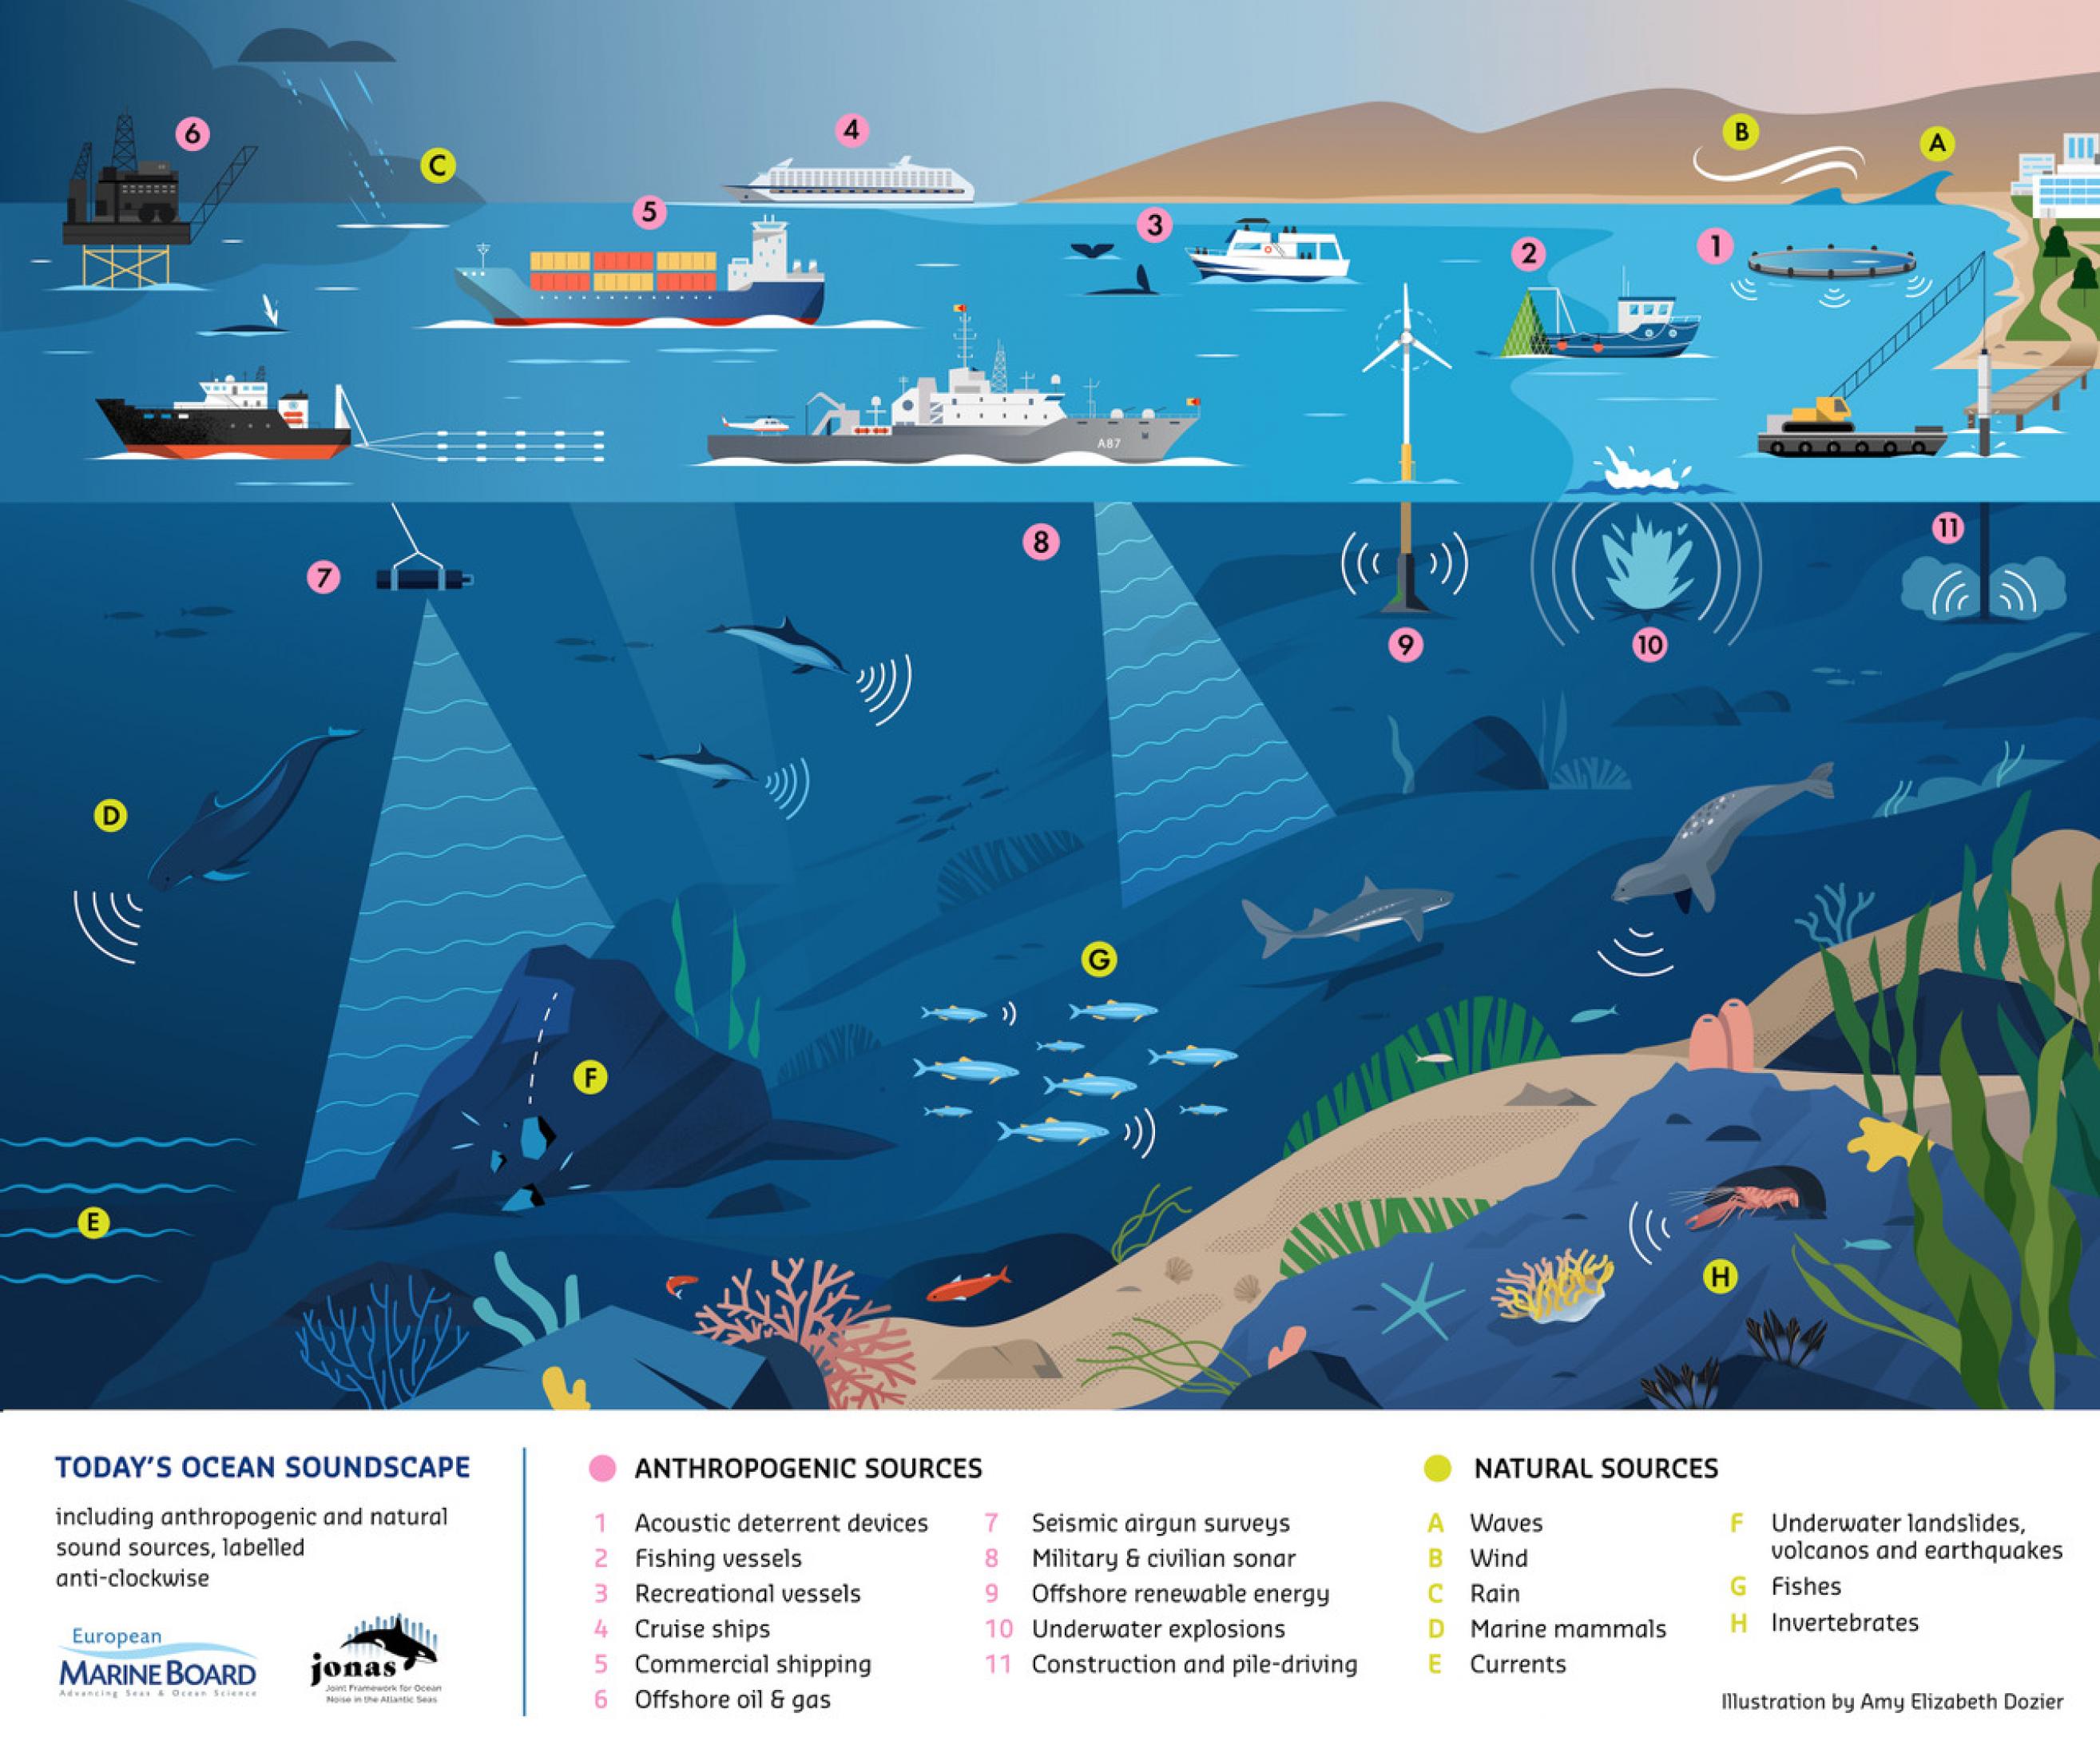 Die Illustration von Amy Dozier zeigt die vielen verschiedenen Schallquellen, die das Mittelmehr akustisch verschmutzen und denen die Wale im Mittelmeer ausgesetzt sind